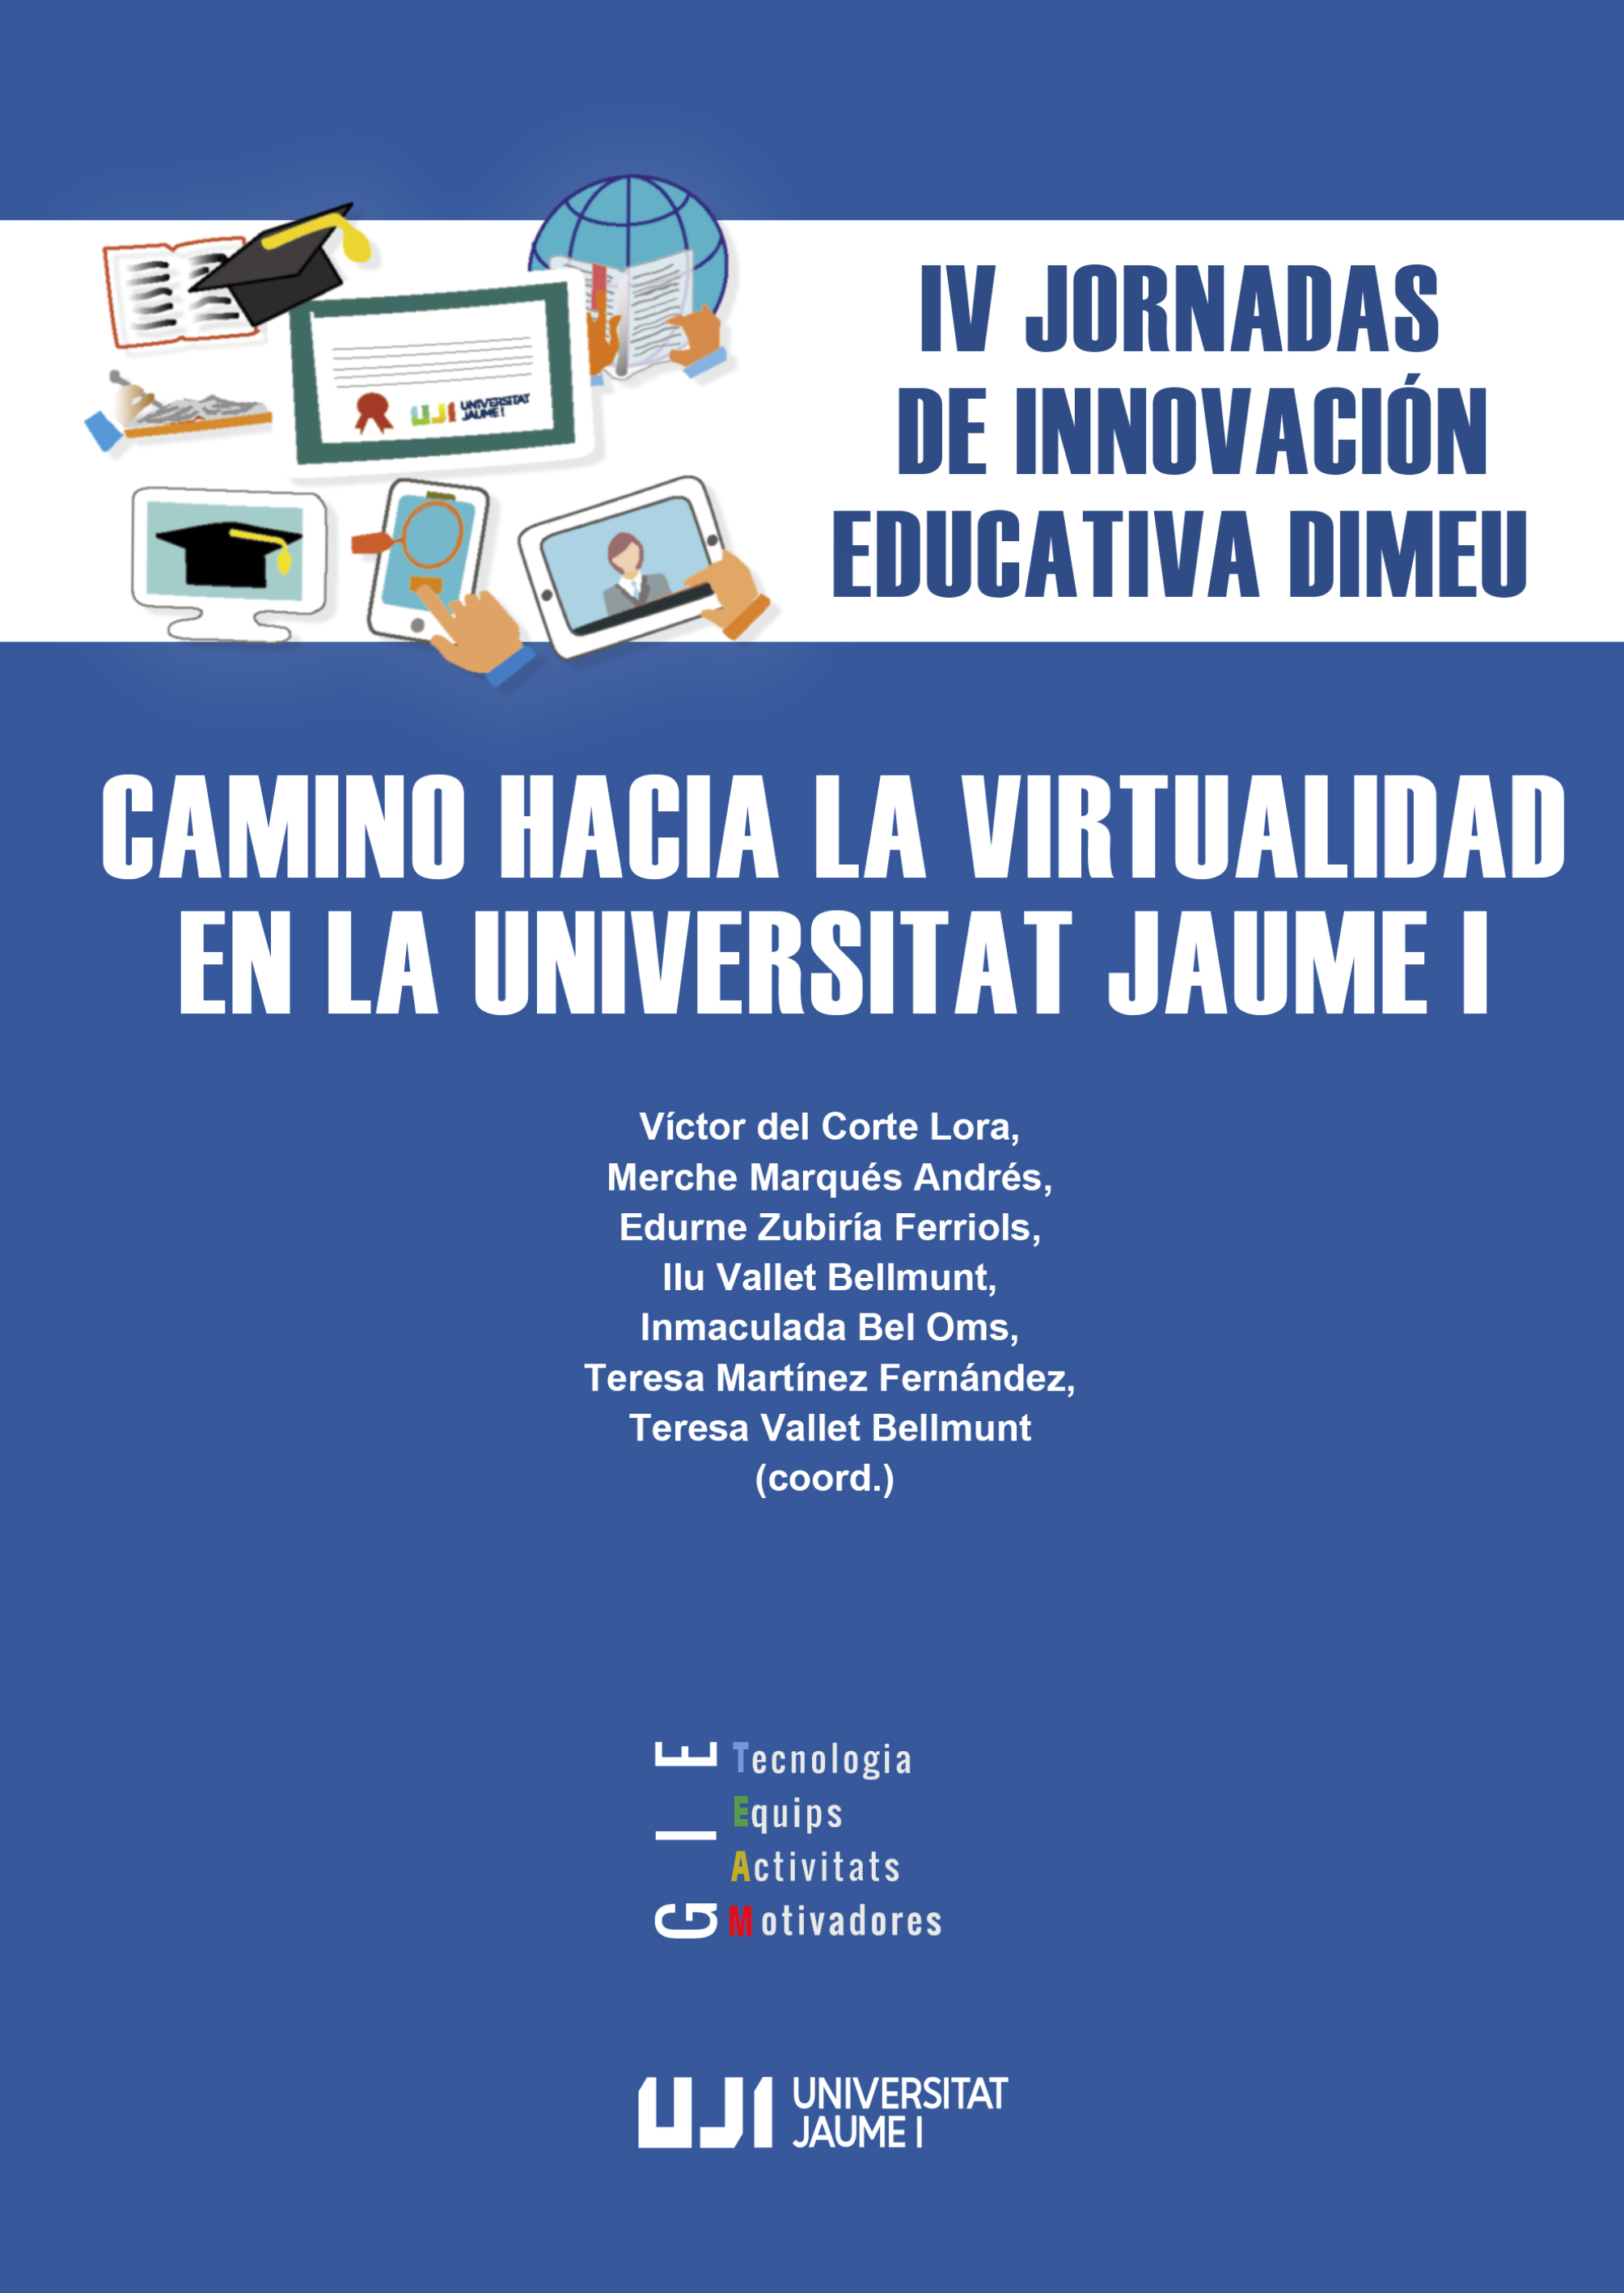 IV Jornadas de Innovación Educativa DIMEU